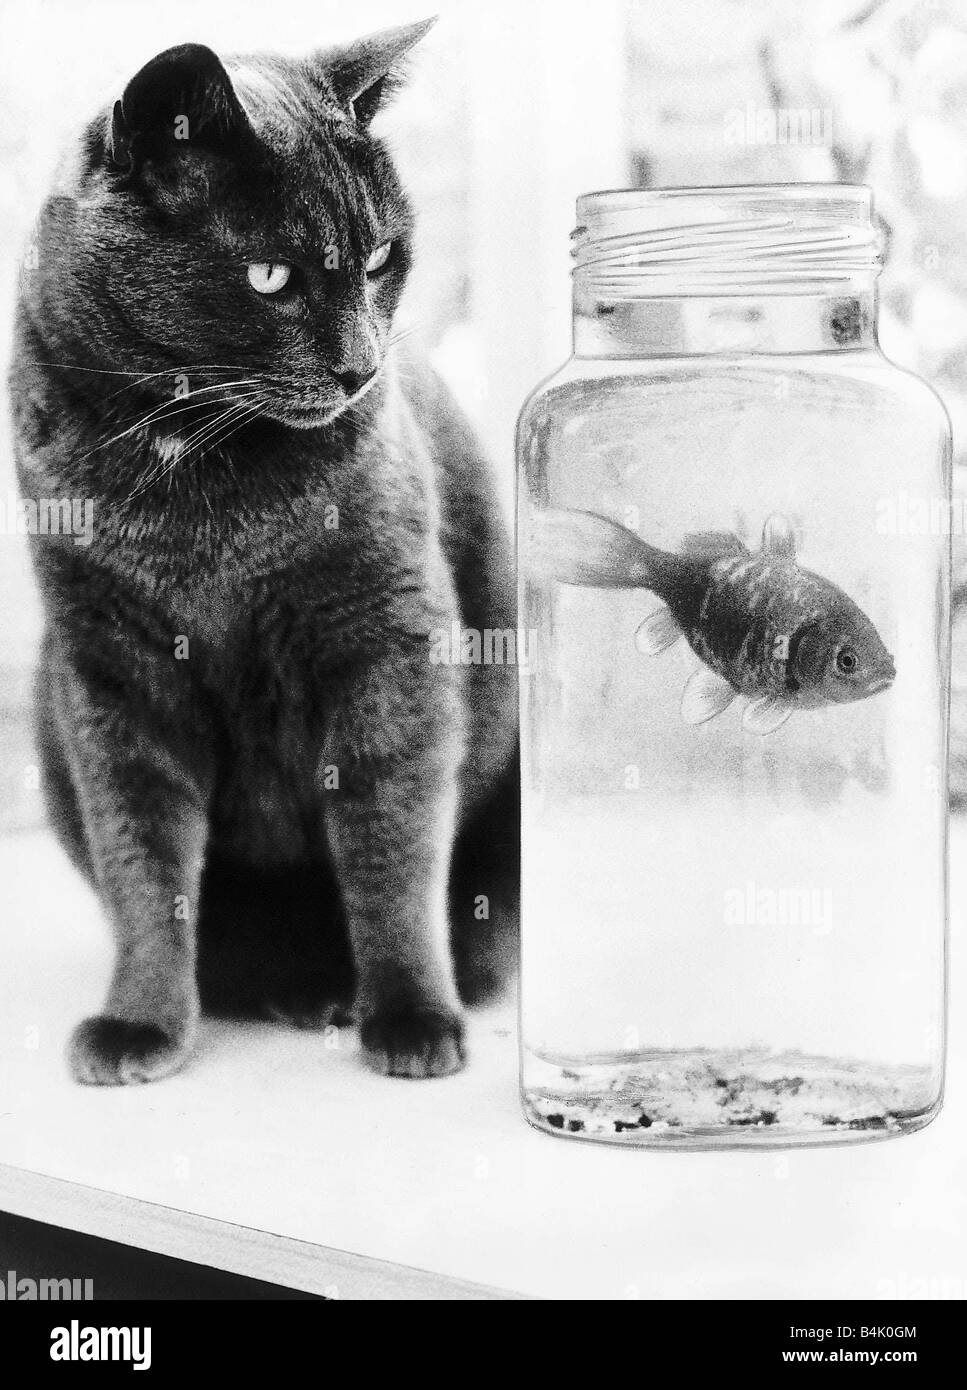 Dinky ist die Katze ein Champion Angler, der Heimat 15 Fische nach Überfällen auf Nachbarn Teiche gebracht hat Stockfoto